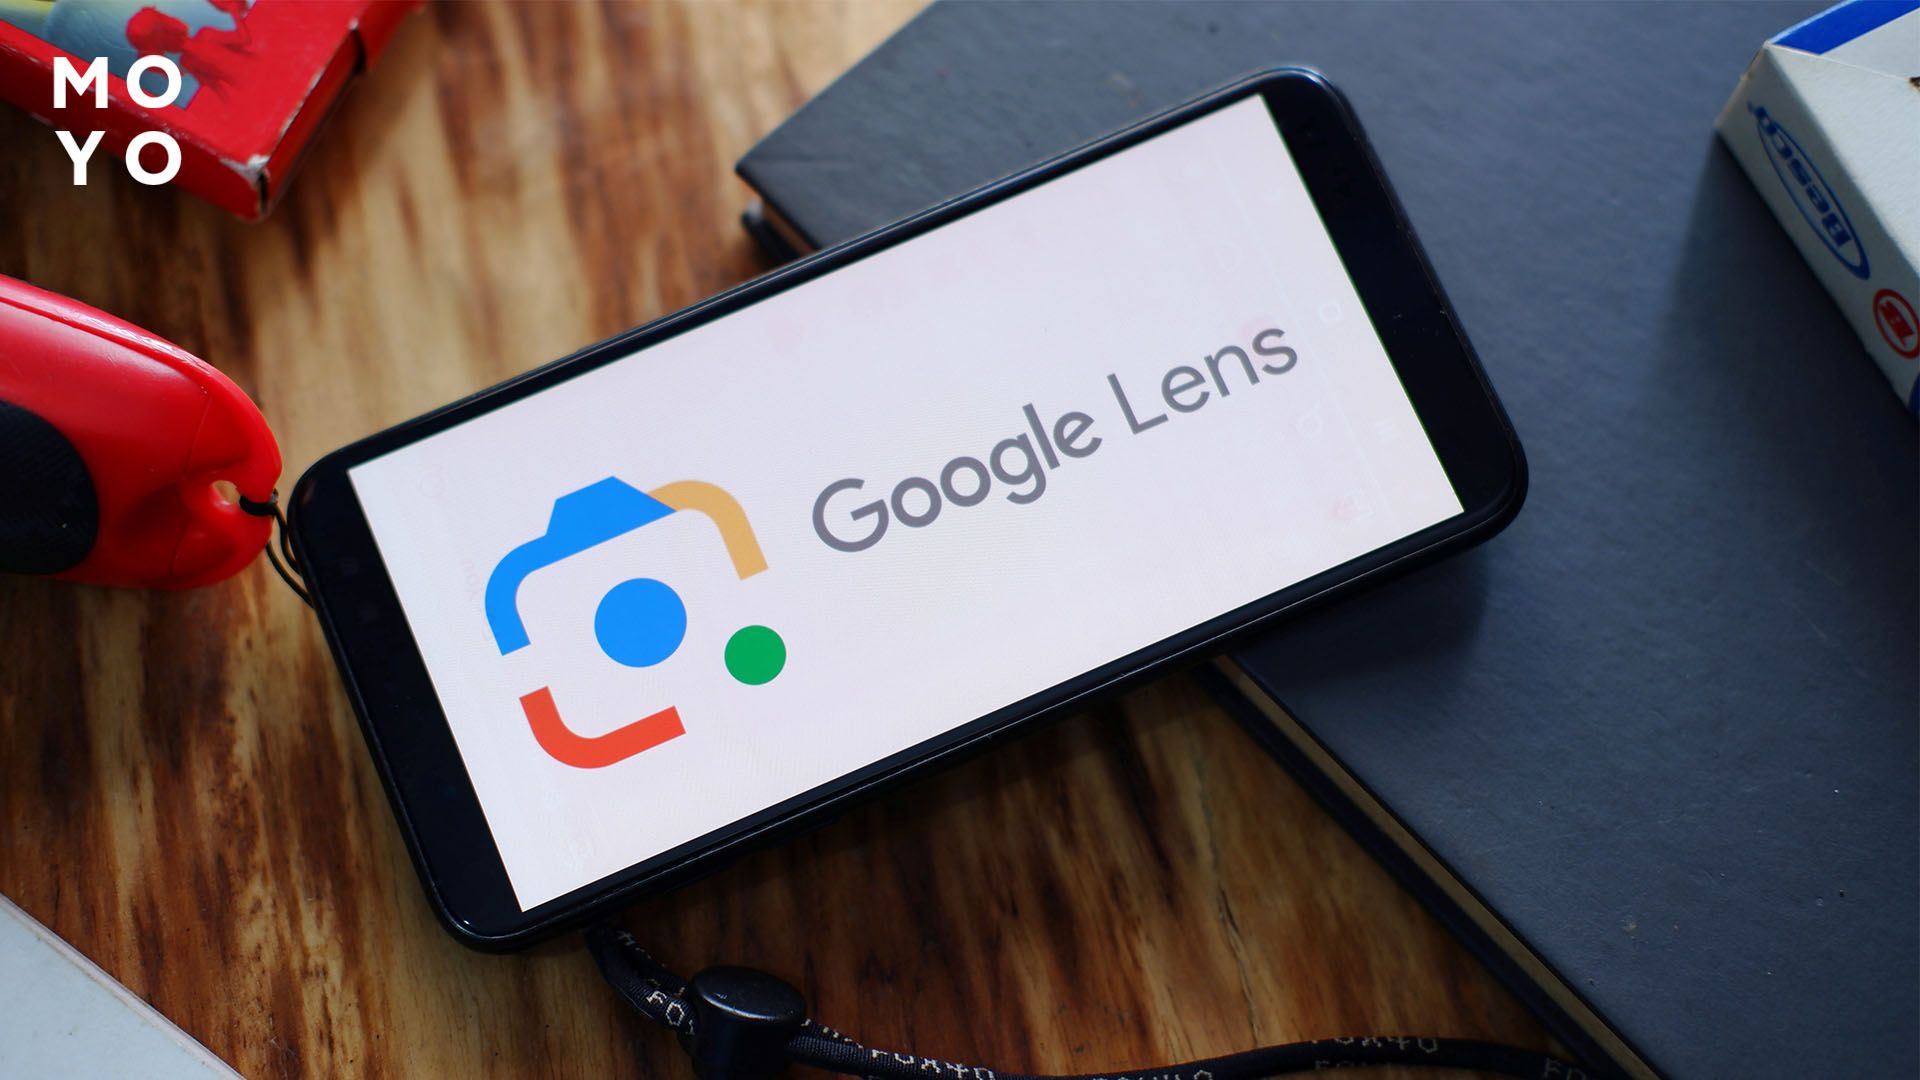 Як миттєво шукати фото в мережі через Google Lens